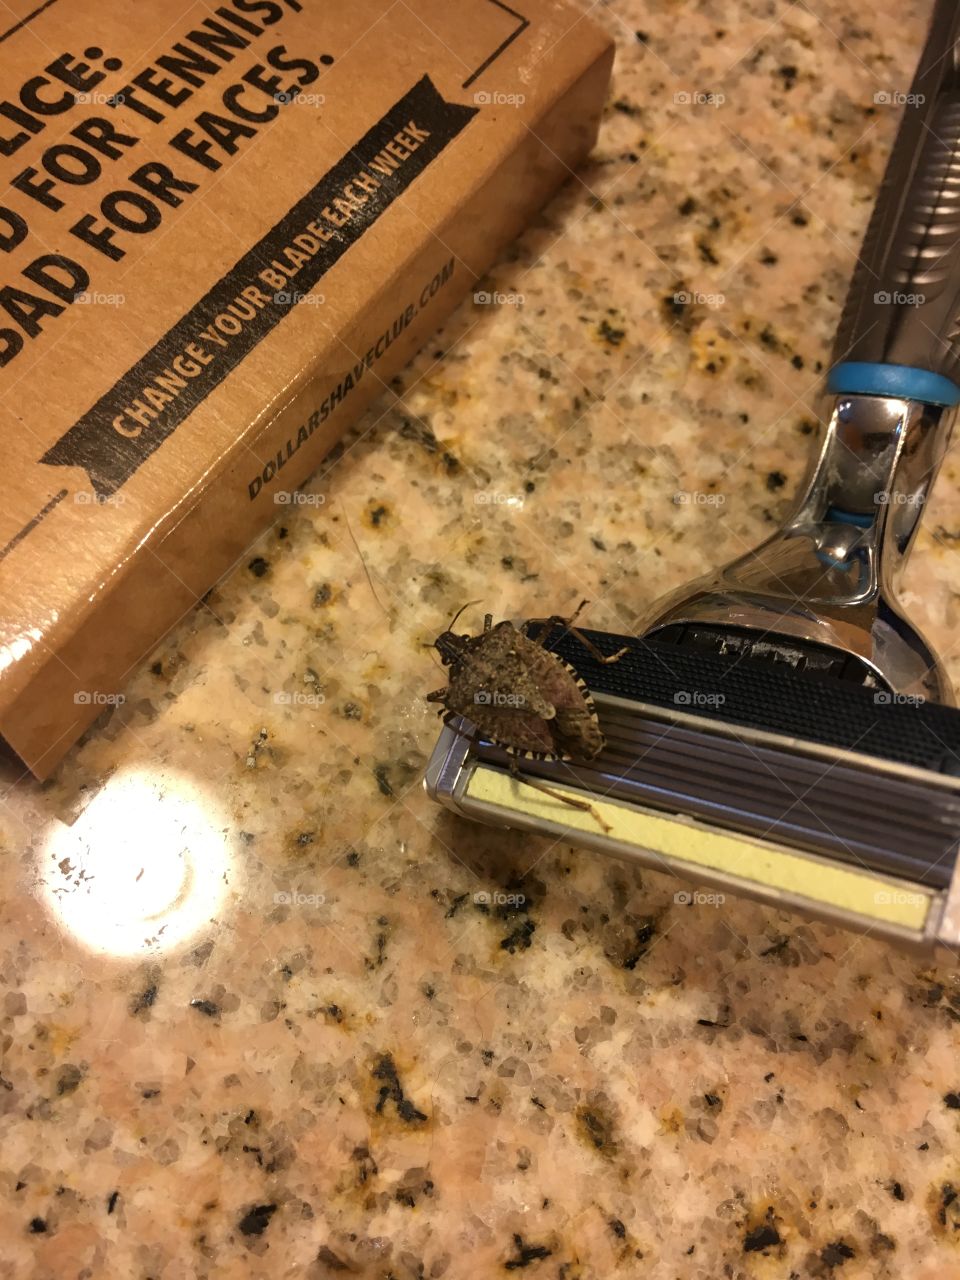 Bug on my razor